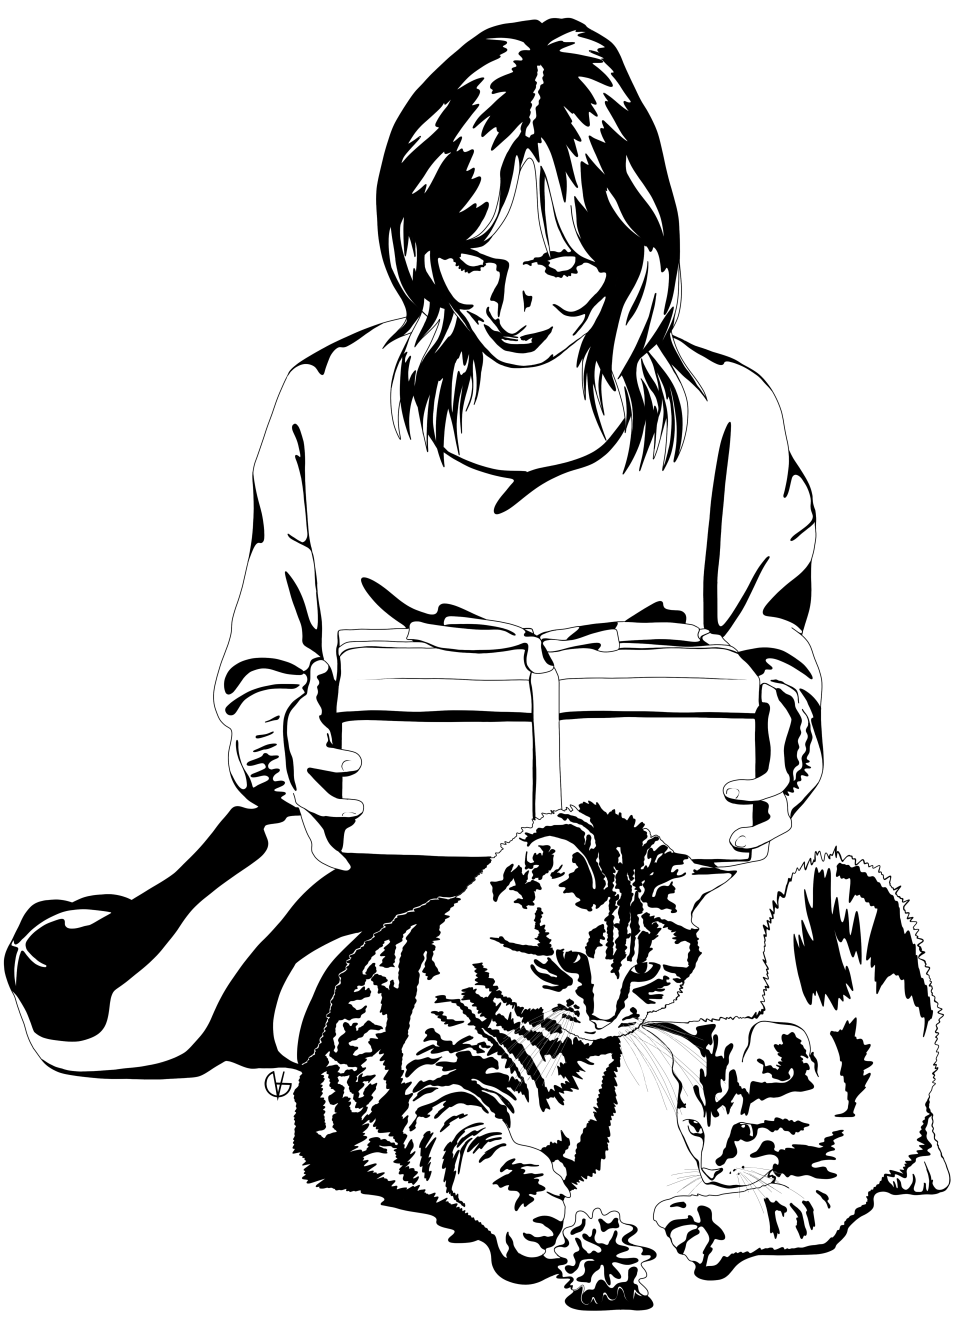 Obrázek na zemi sedící ženy, hledícím na balíček v rukách, před níž si hrají dvě kočky s chomáčkem.